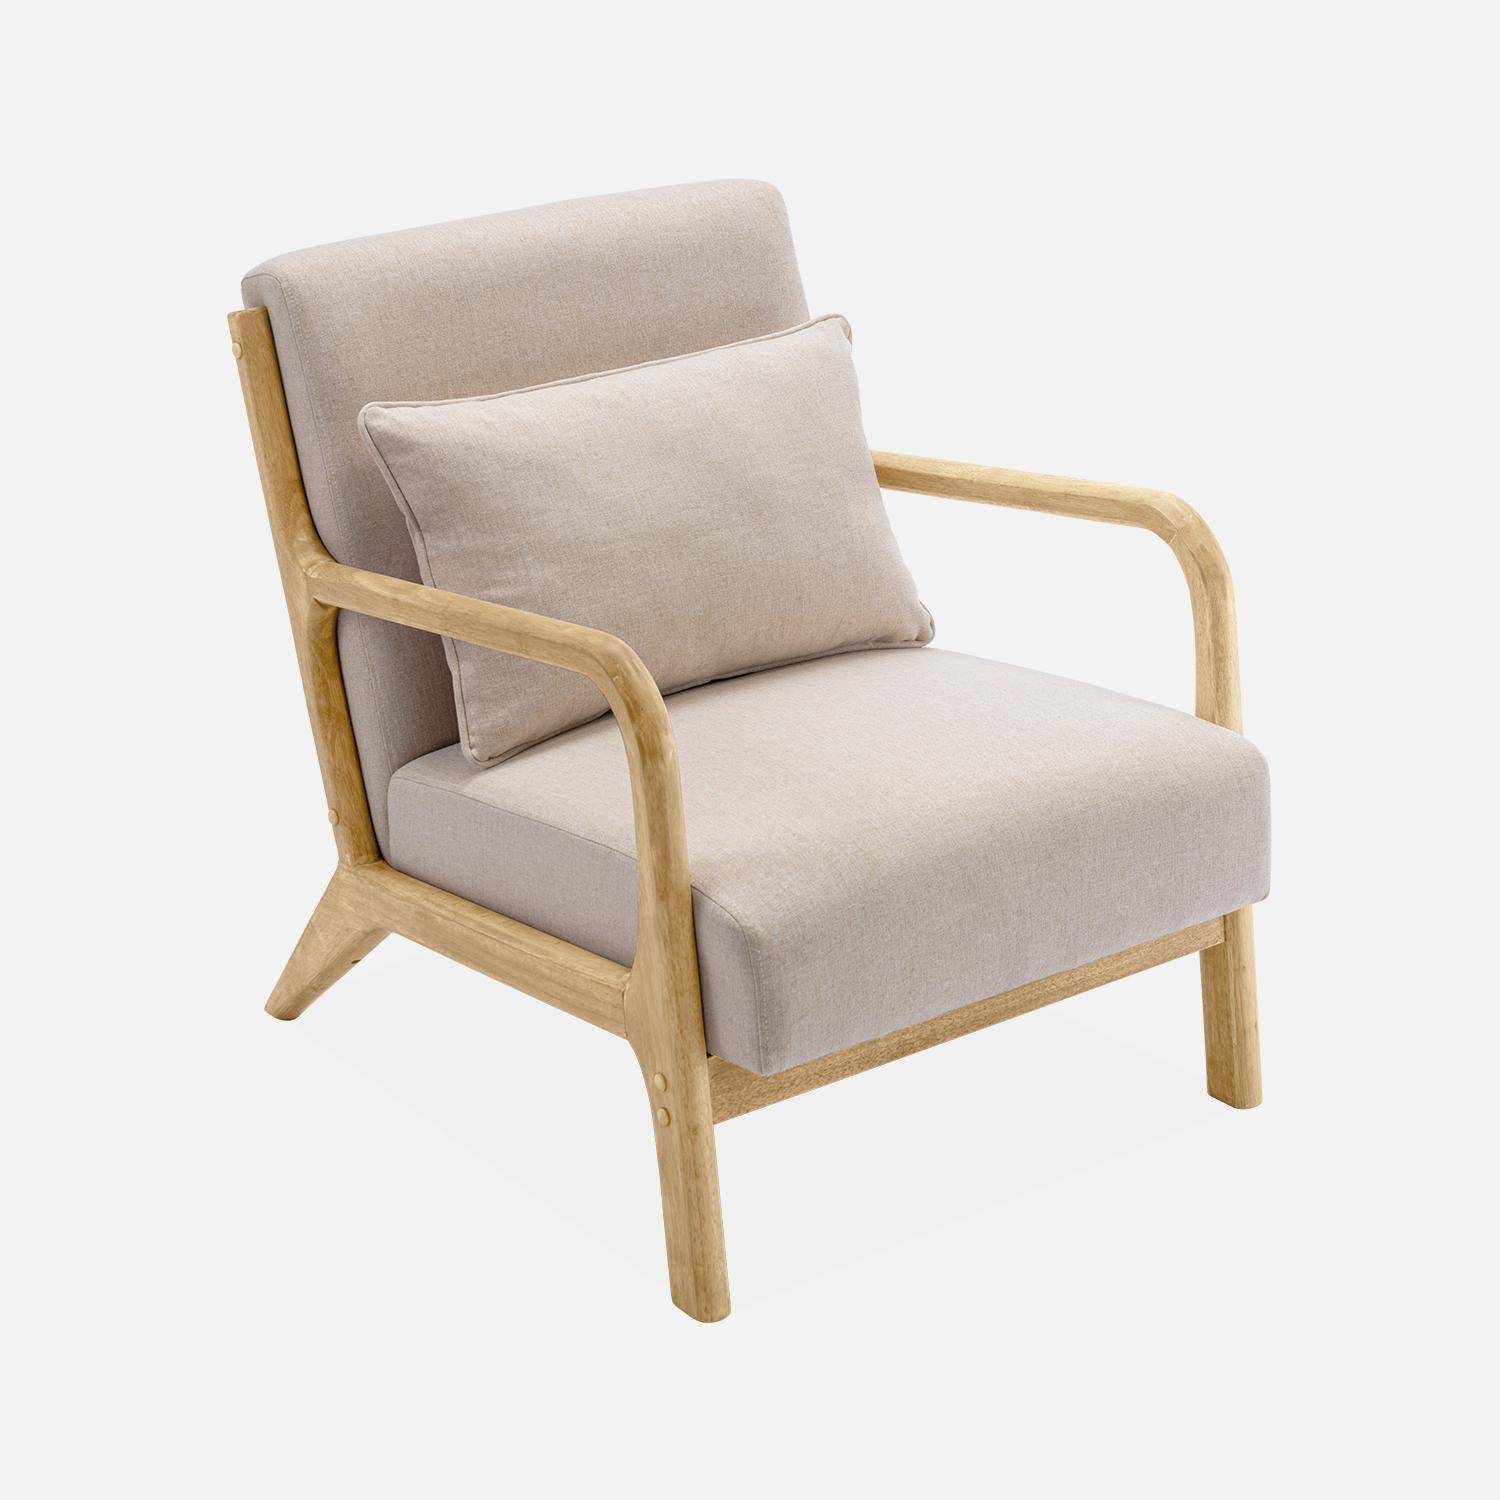 Poltrona de design em madeira e tecido, 1 assento reto fixo, pernas em bússola escandinavas, estrutura em madeira maciça, assento bege confortável Photo4